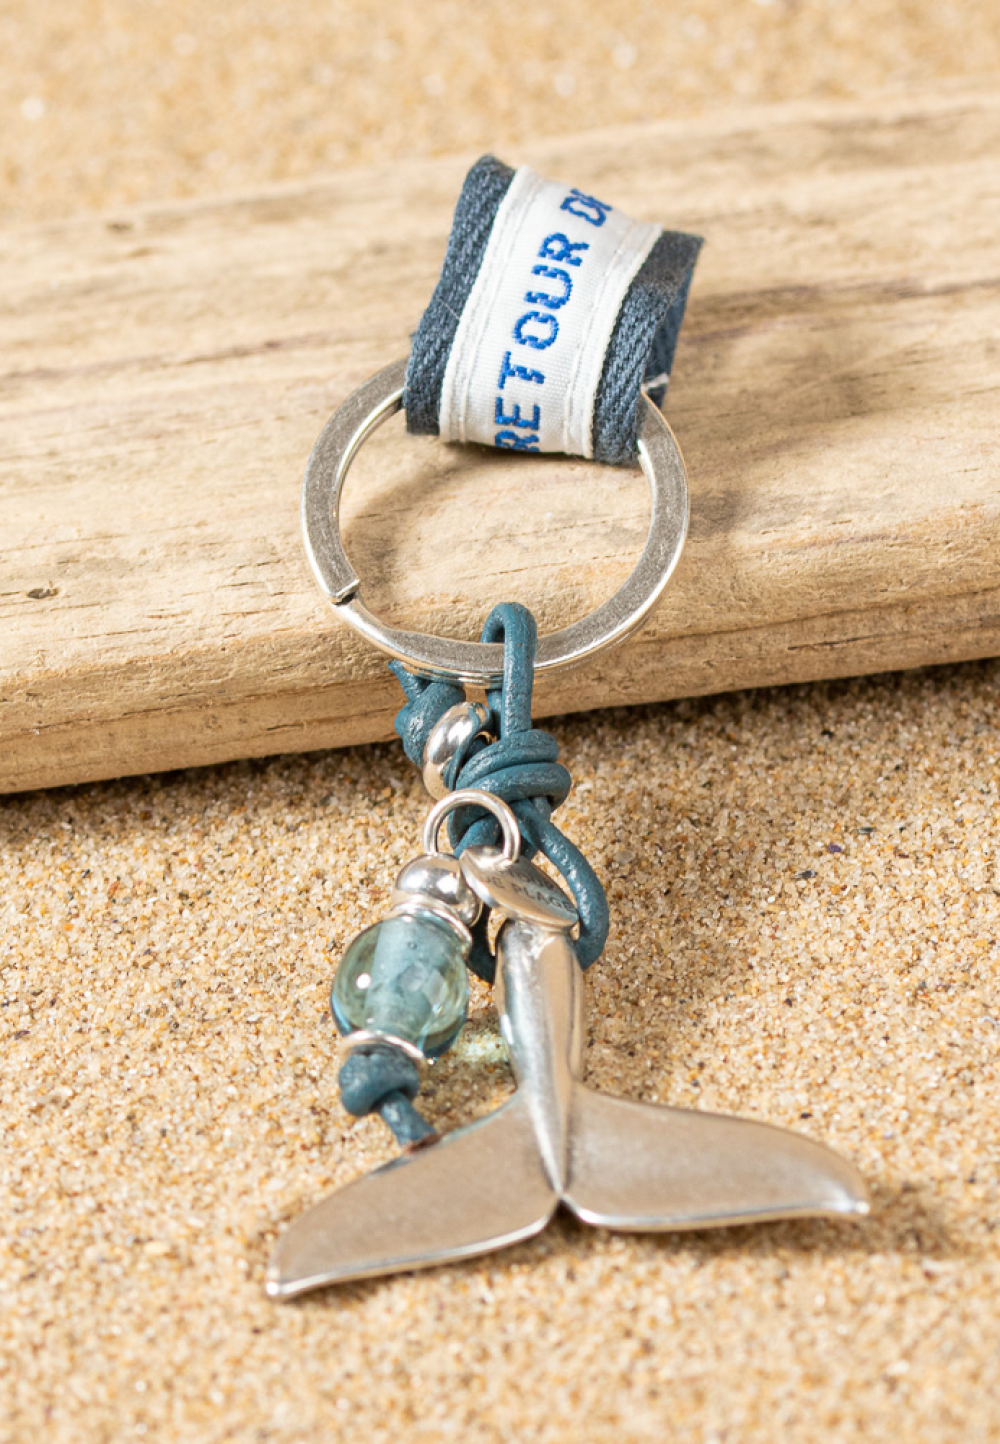 Porte-clefs Arcachon bleu ciel et argenté - Retour de plage